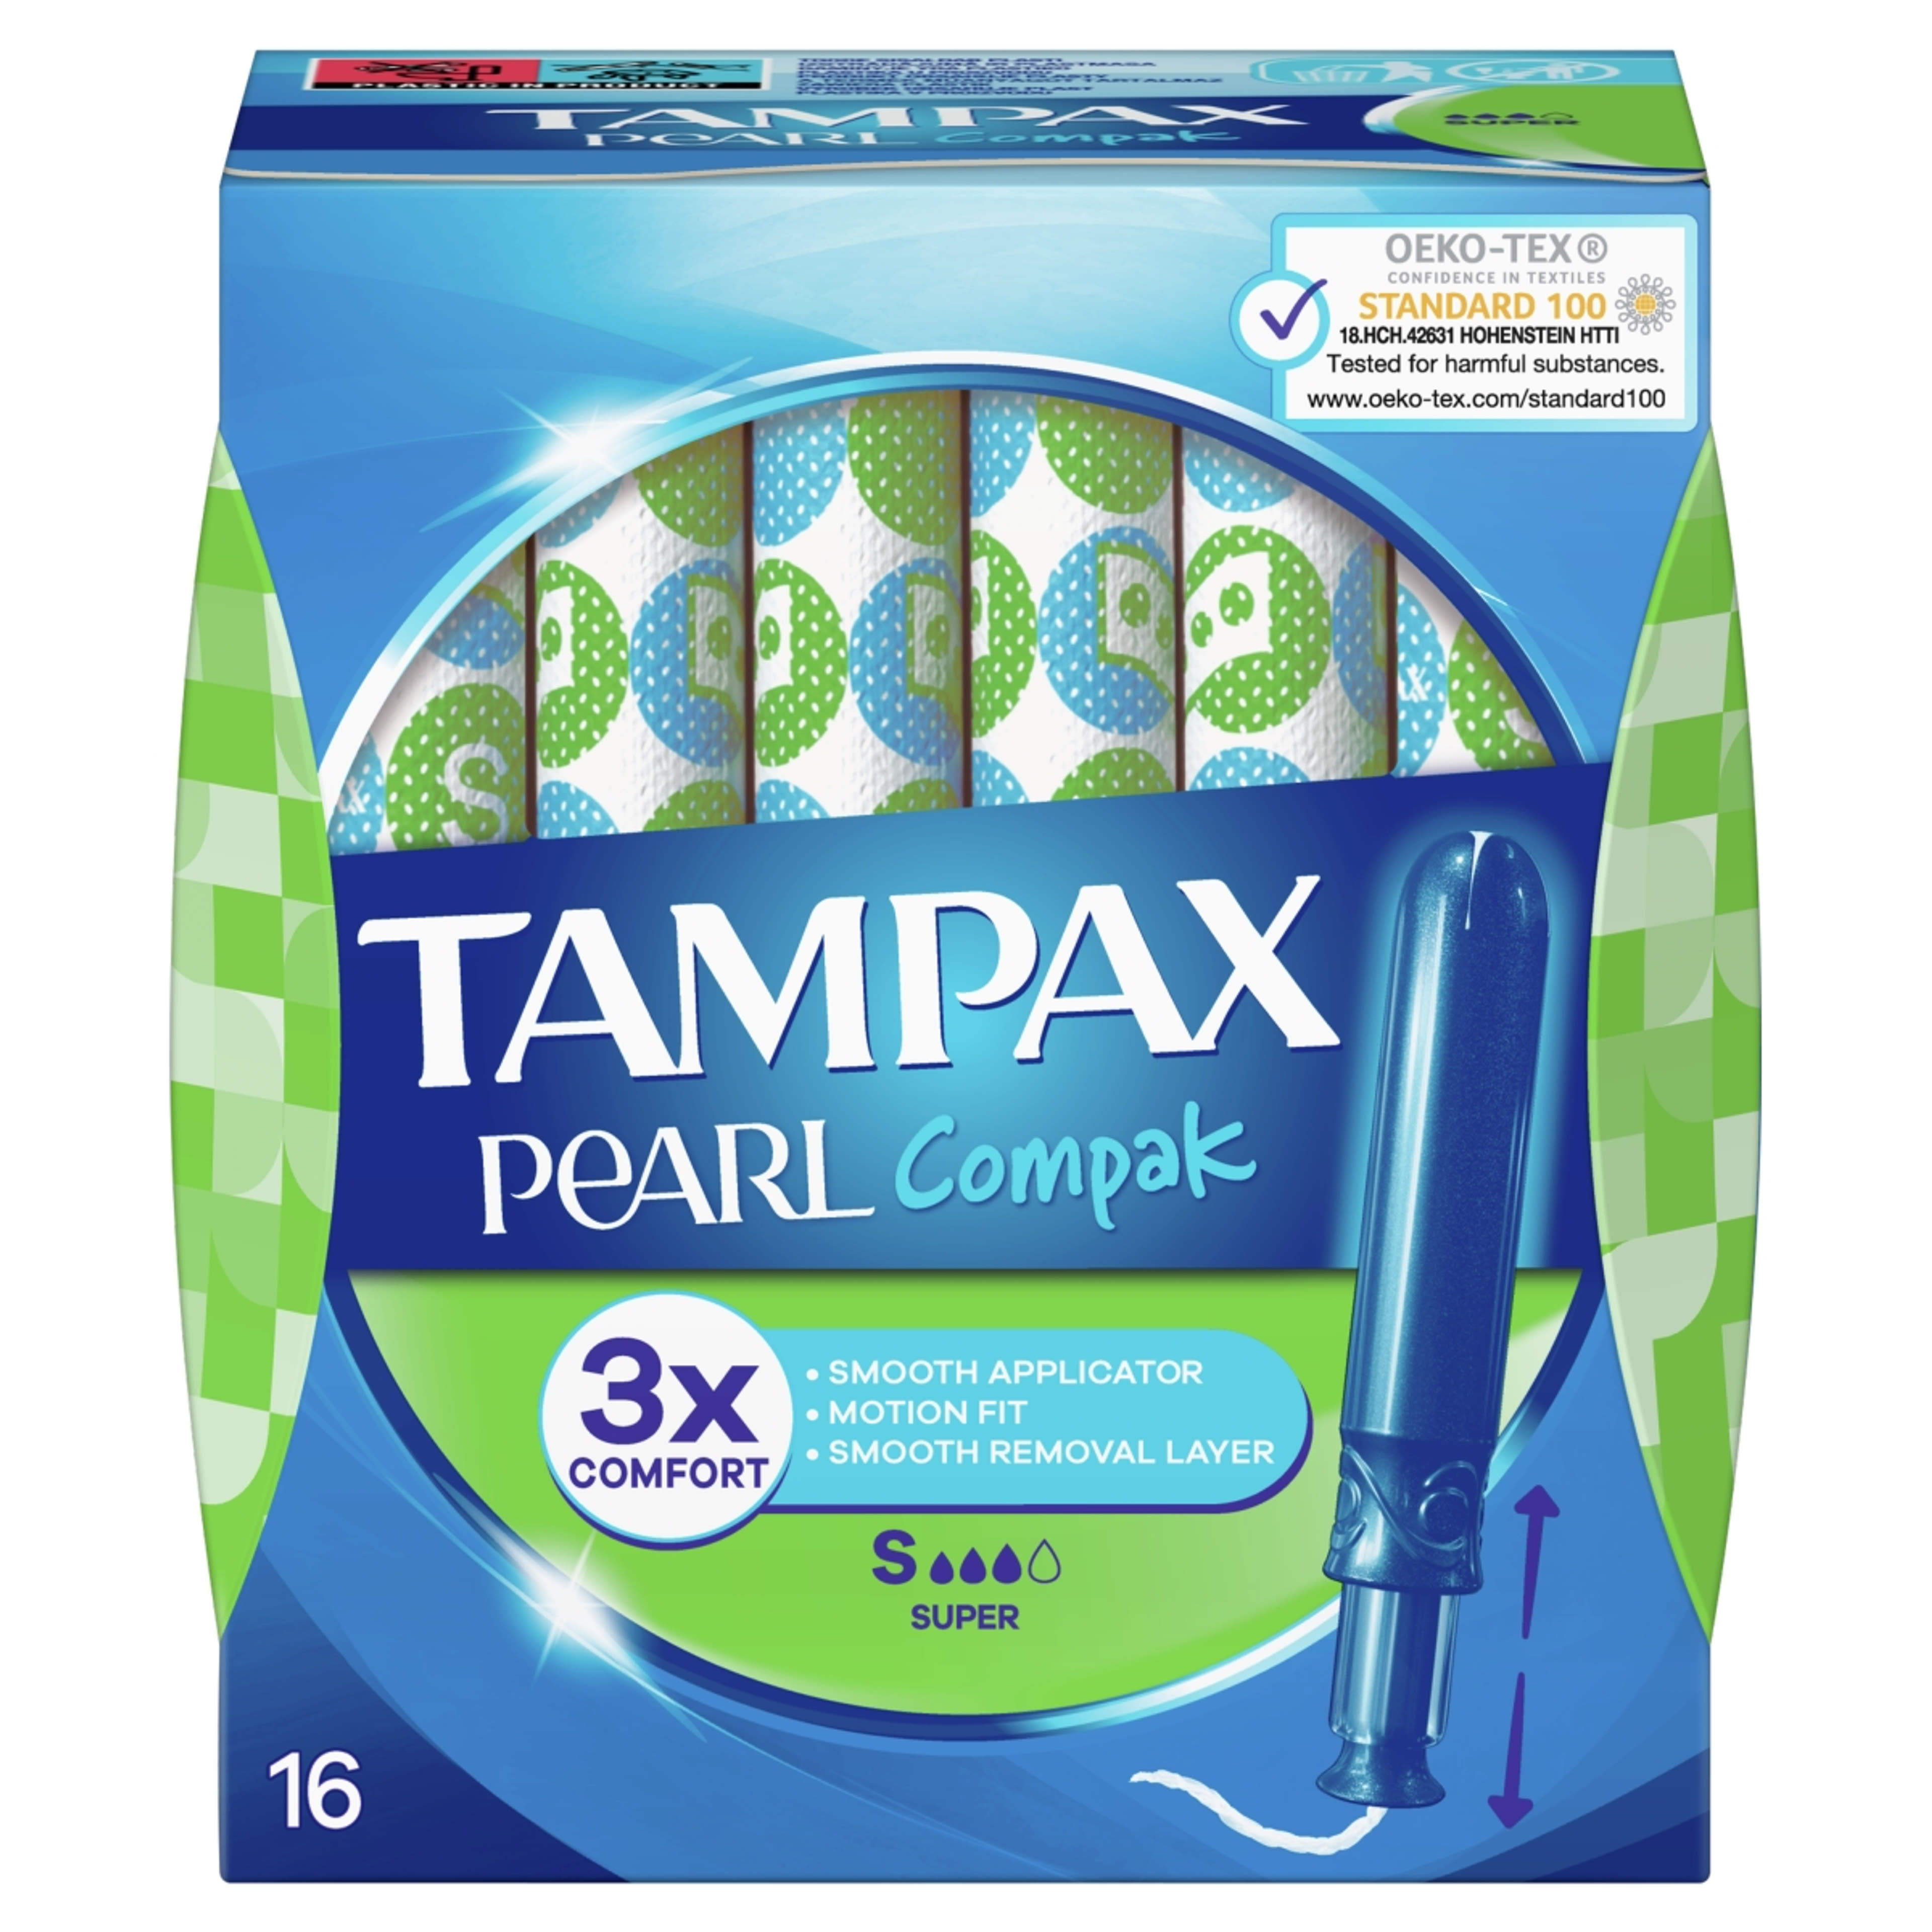 Tampax tampon pearl compak super - 16 db-1